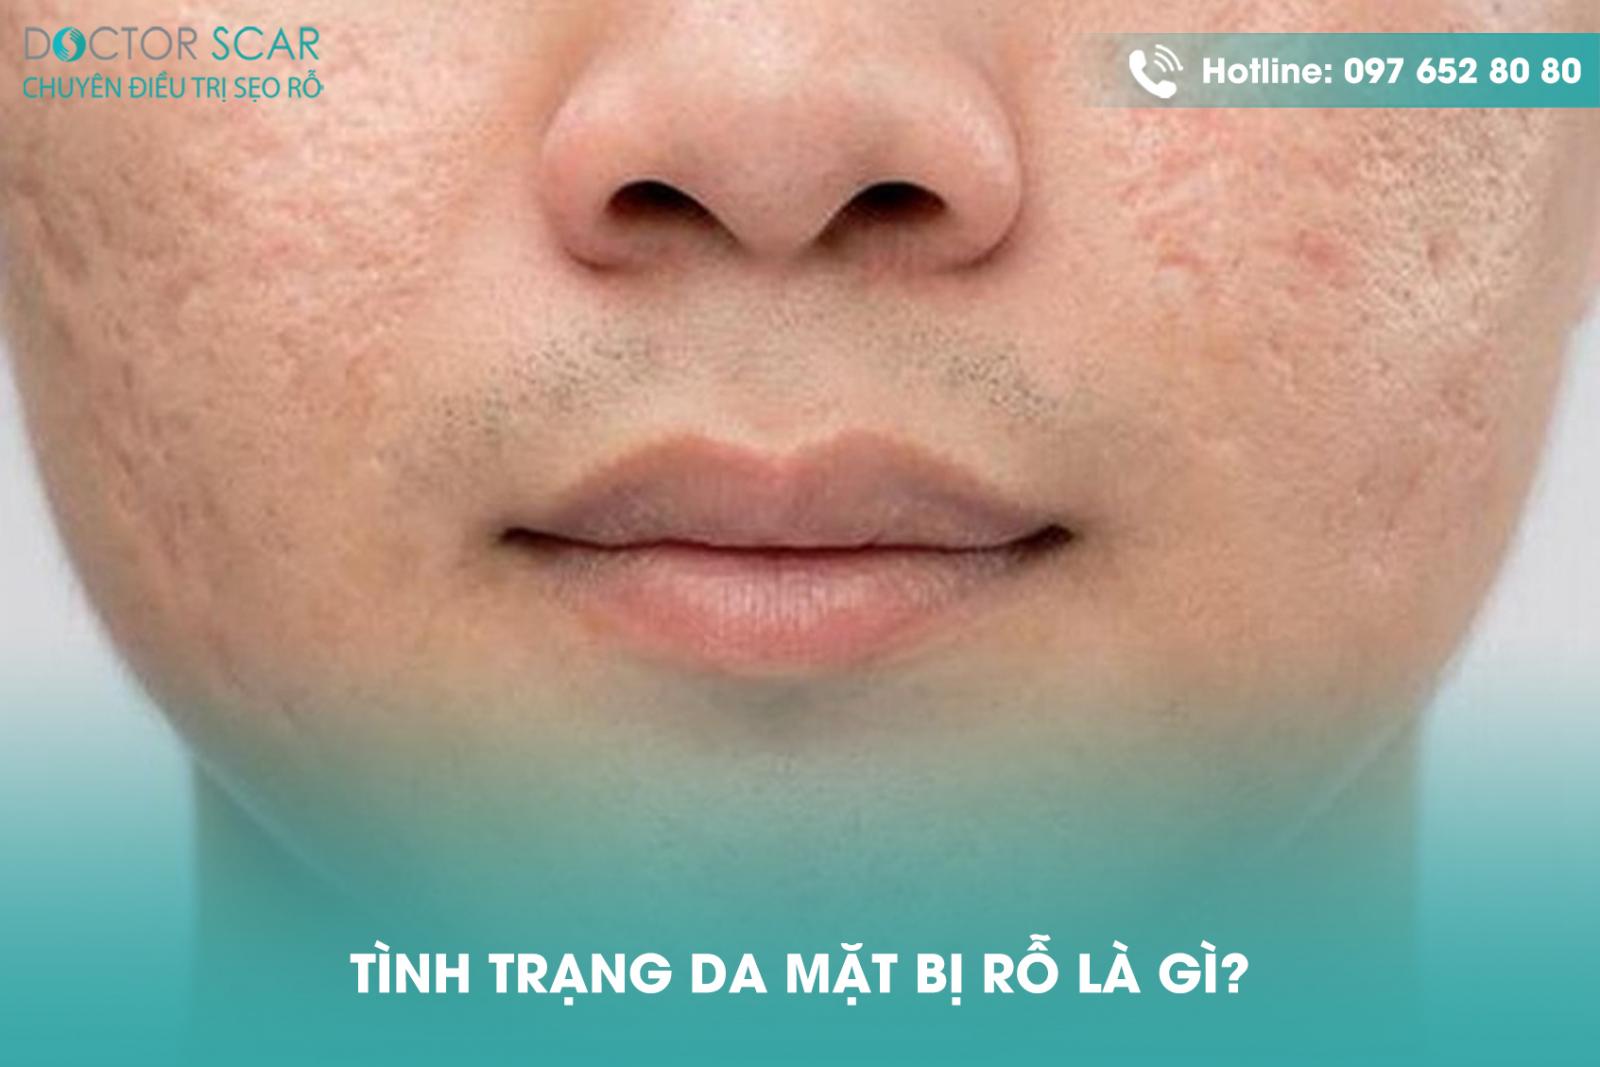 Tình trạng da mặt bị rỗ là gì?